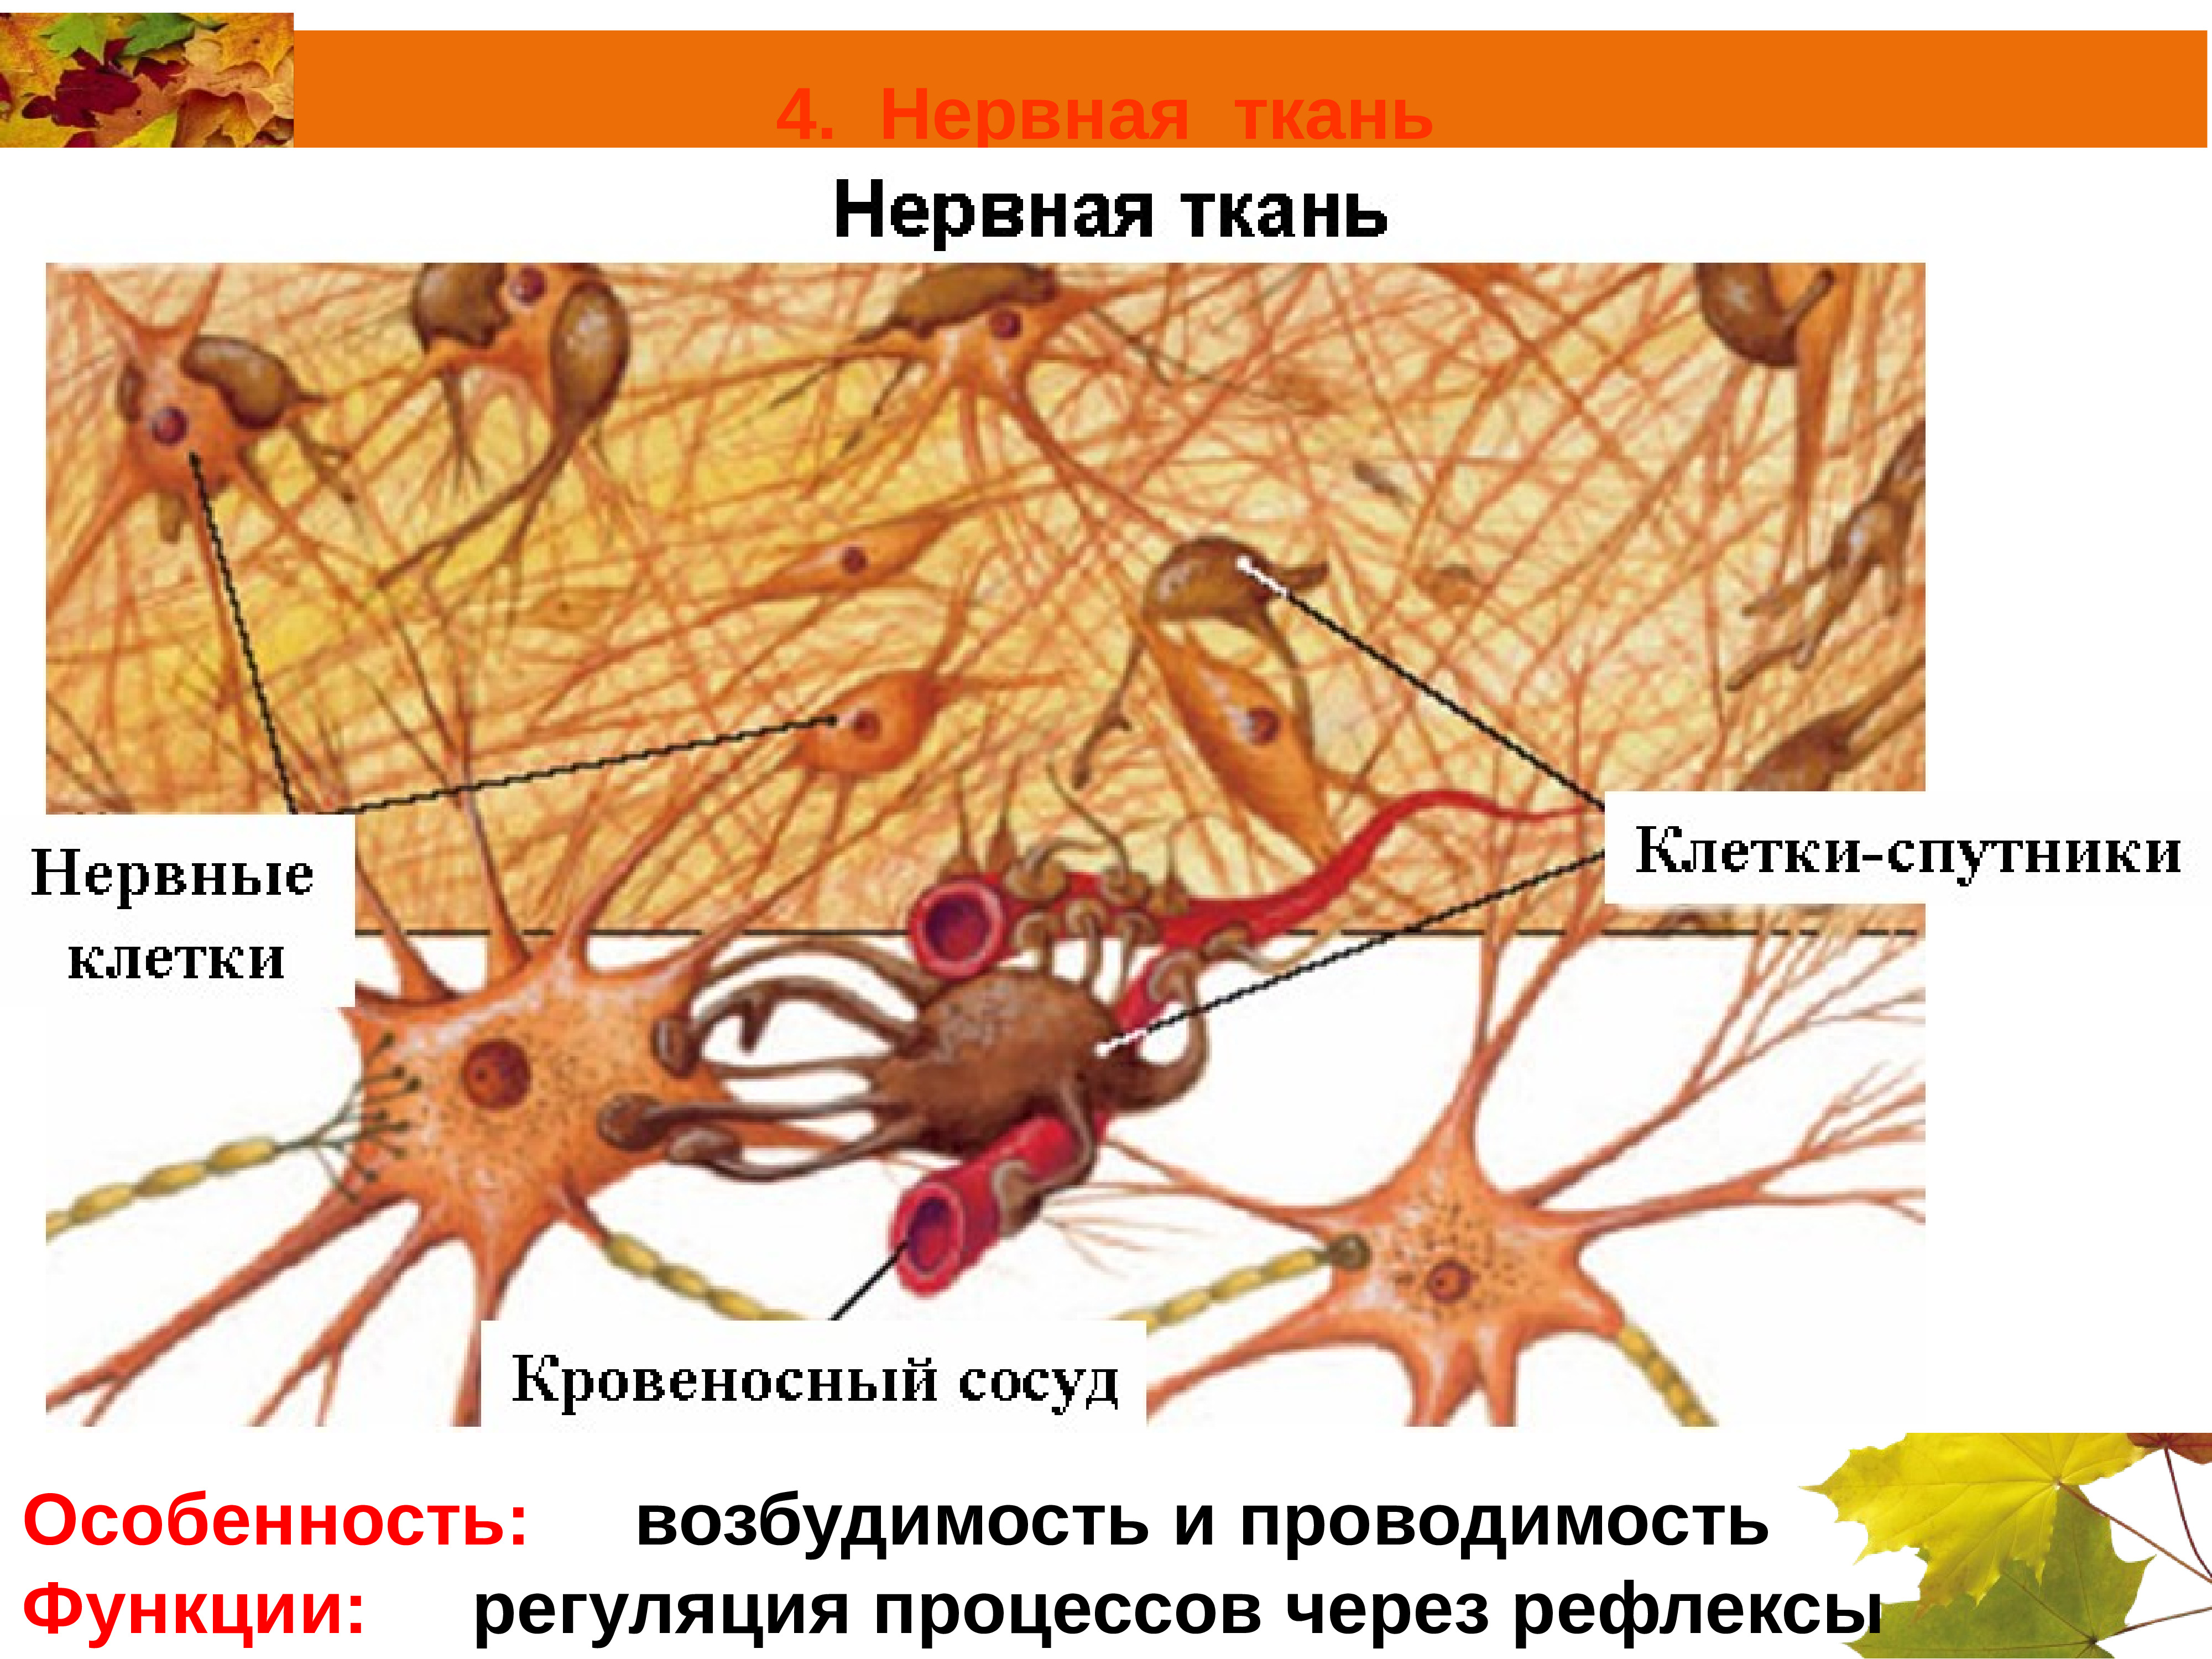 Ткани человека нервная Нейроны и нейроглии